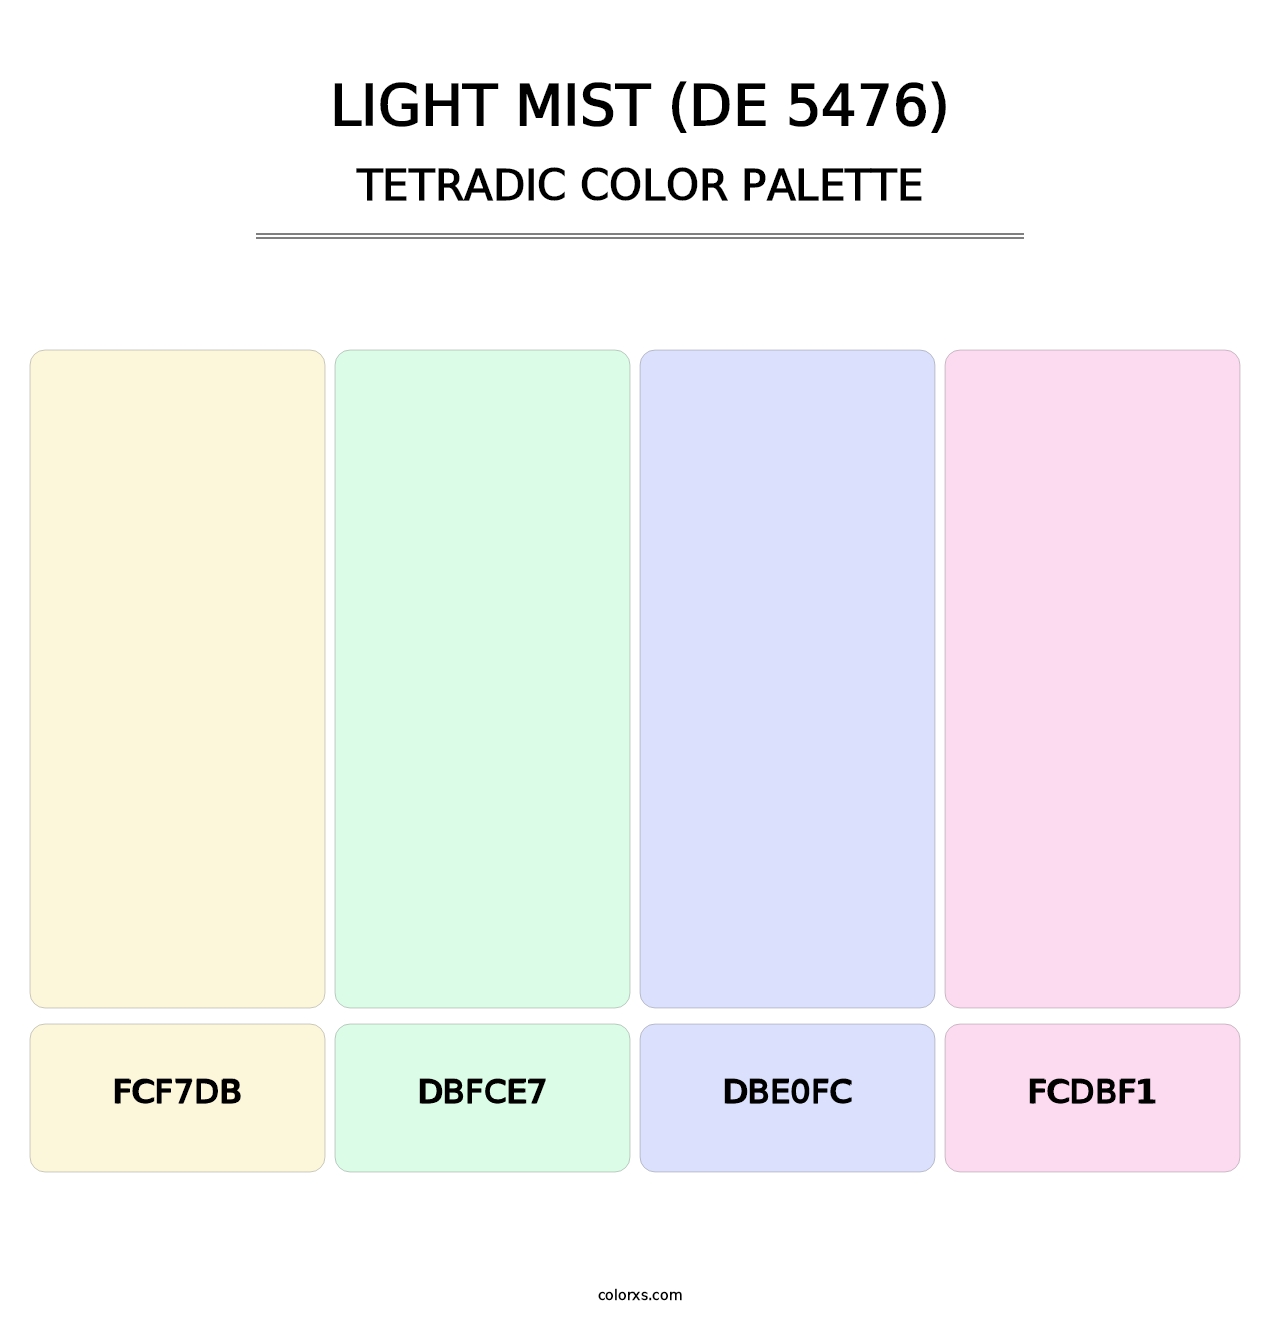 Light Mist (DE 5476) - Tetradic Color Palette